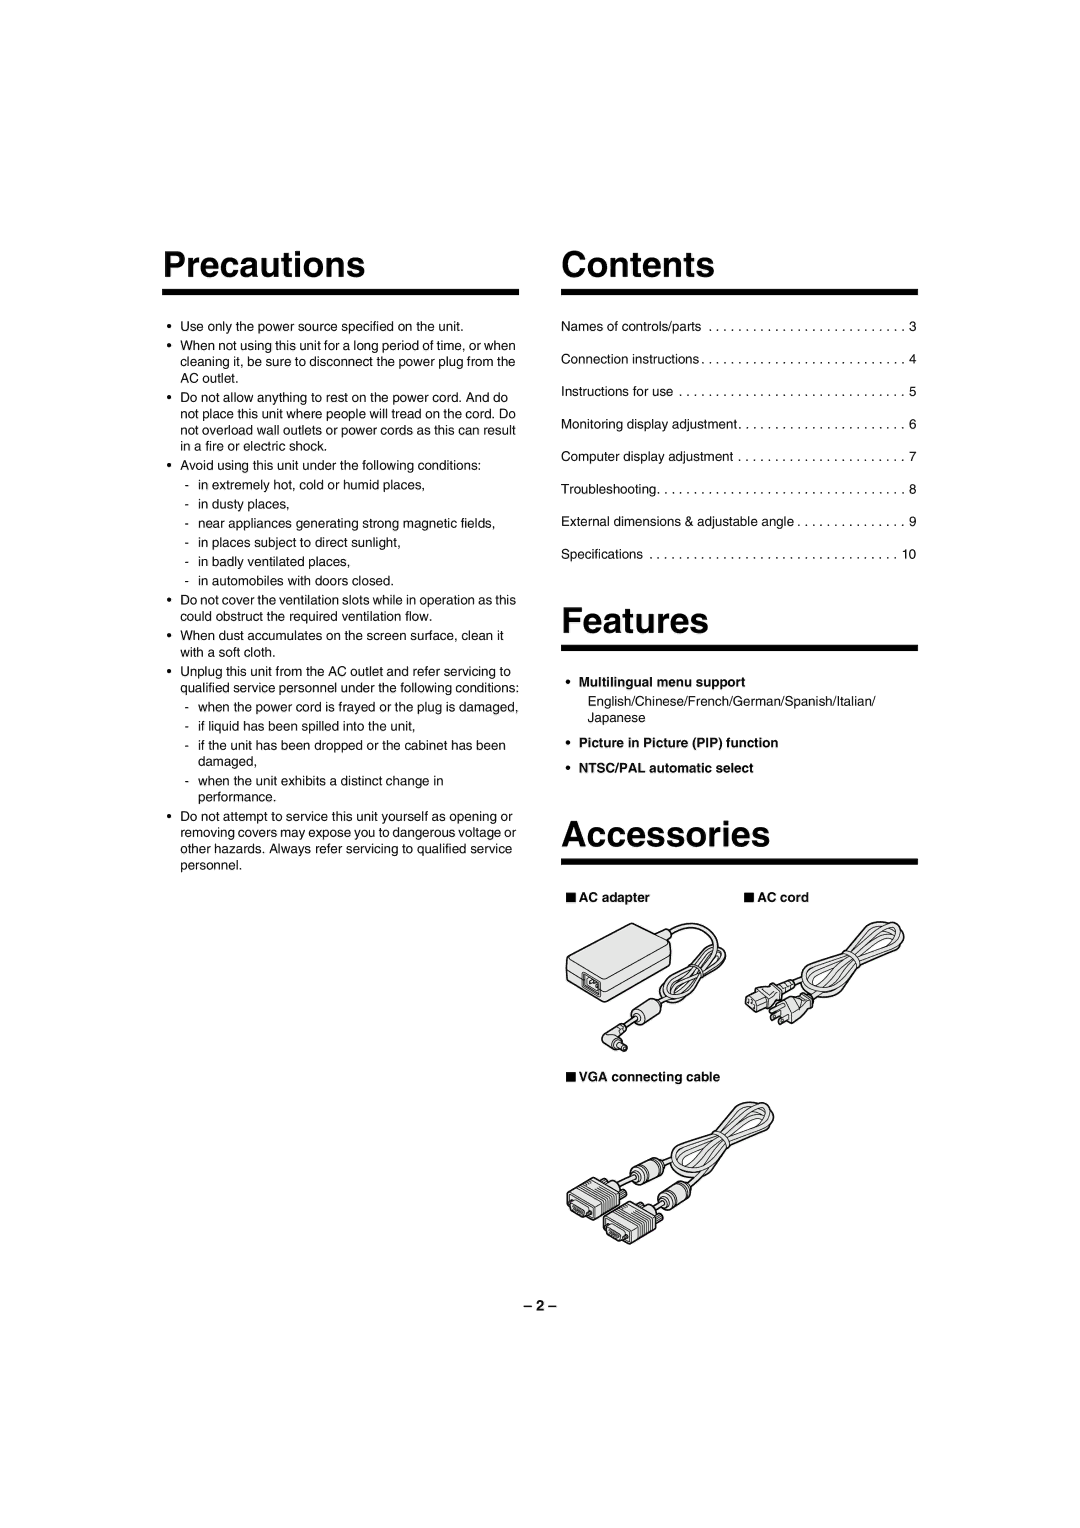 Sanyo VMC-L1019, VMC-L1017, VMC-L1015 instruction manual Precautions Contents, Features, Accessories 